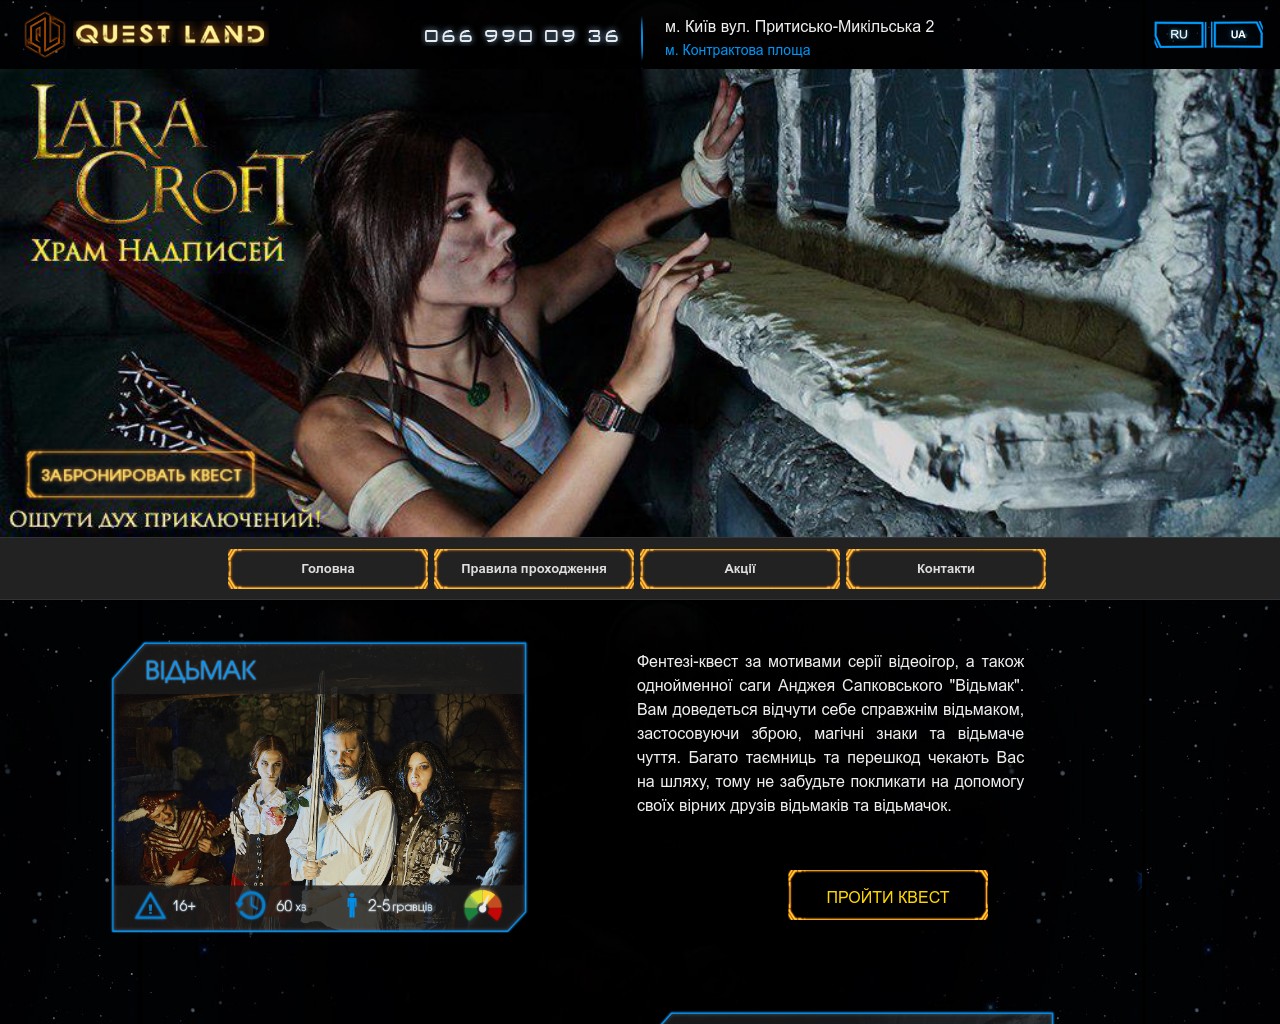 Изображение скриншота сайта - QuestLand - квест-комнаты в Киеве по мотивам популярных игр